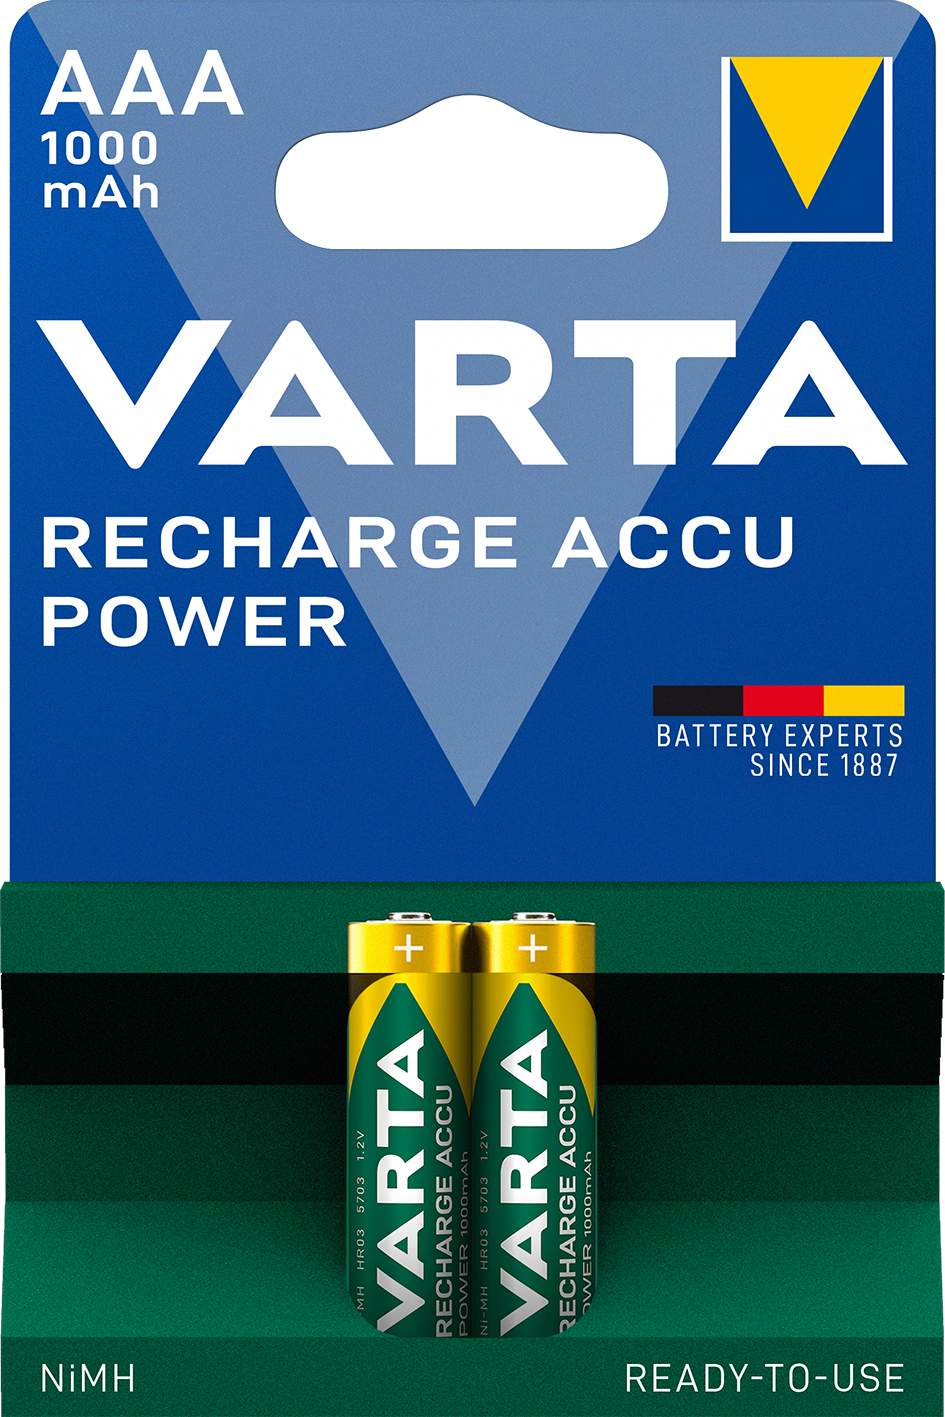 VARTA RECHARGE ACCU POWER AAA 1000MAH PAR 2